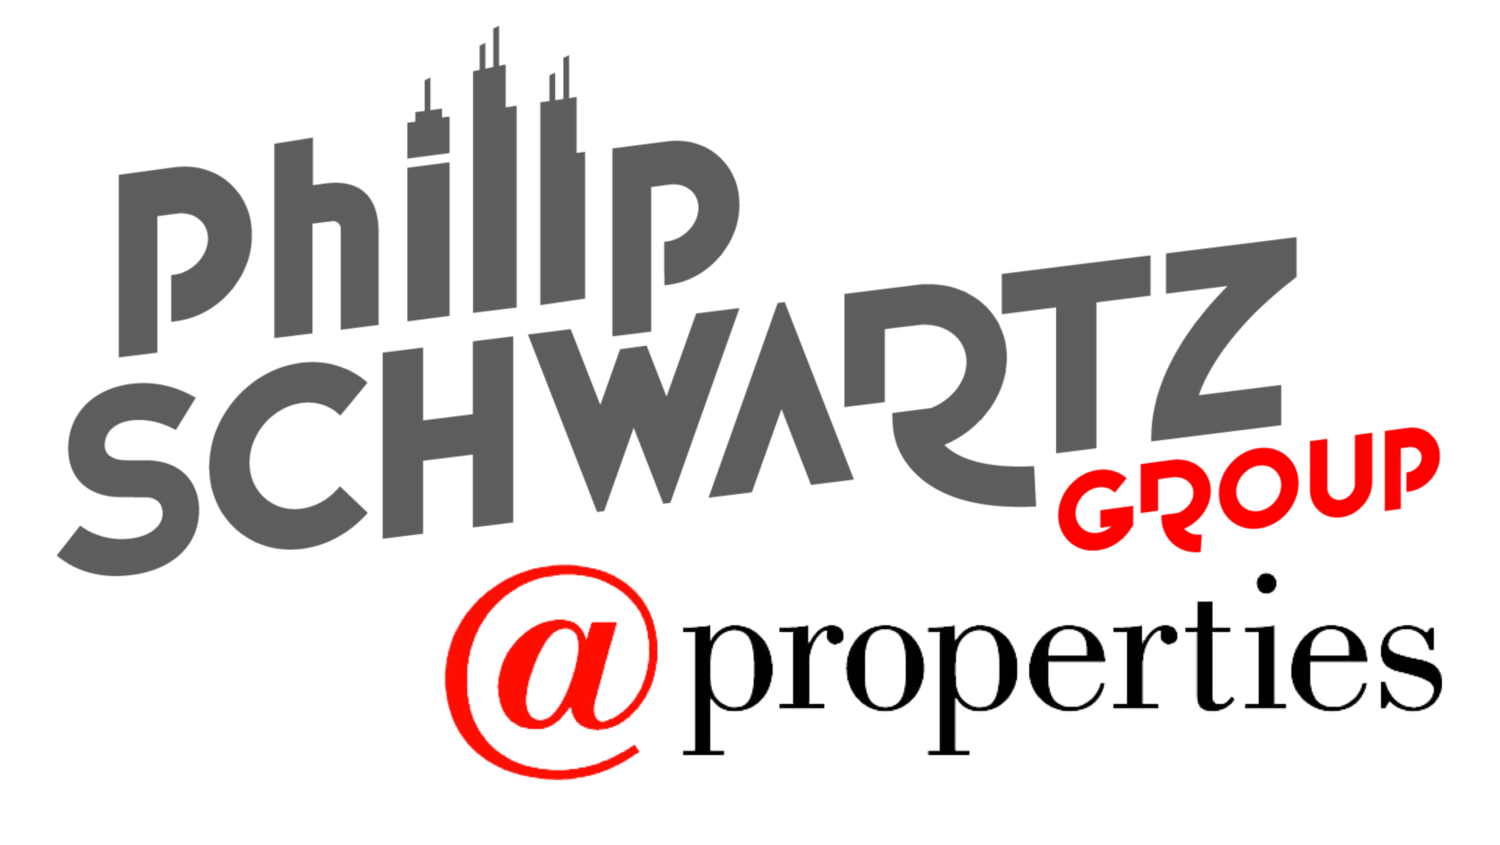 Philip Schwartz Group